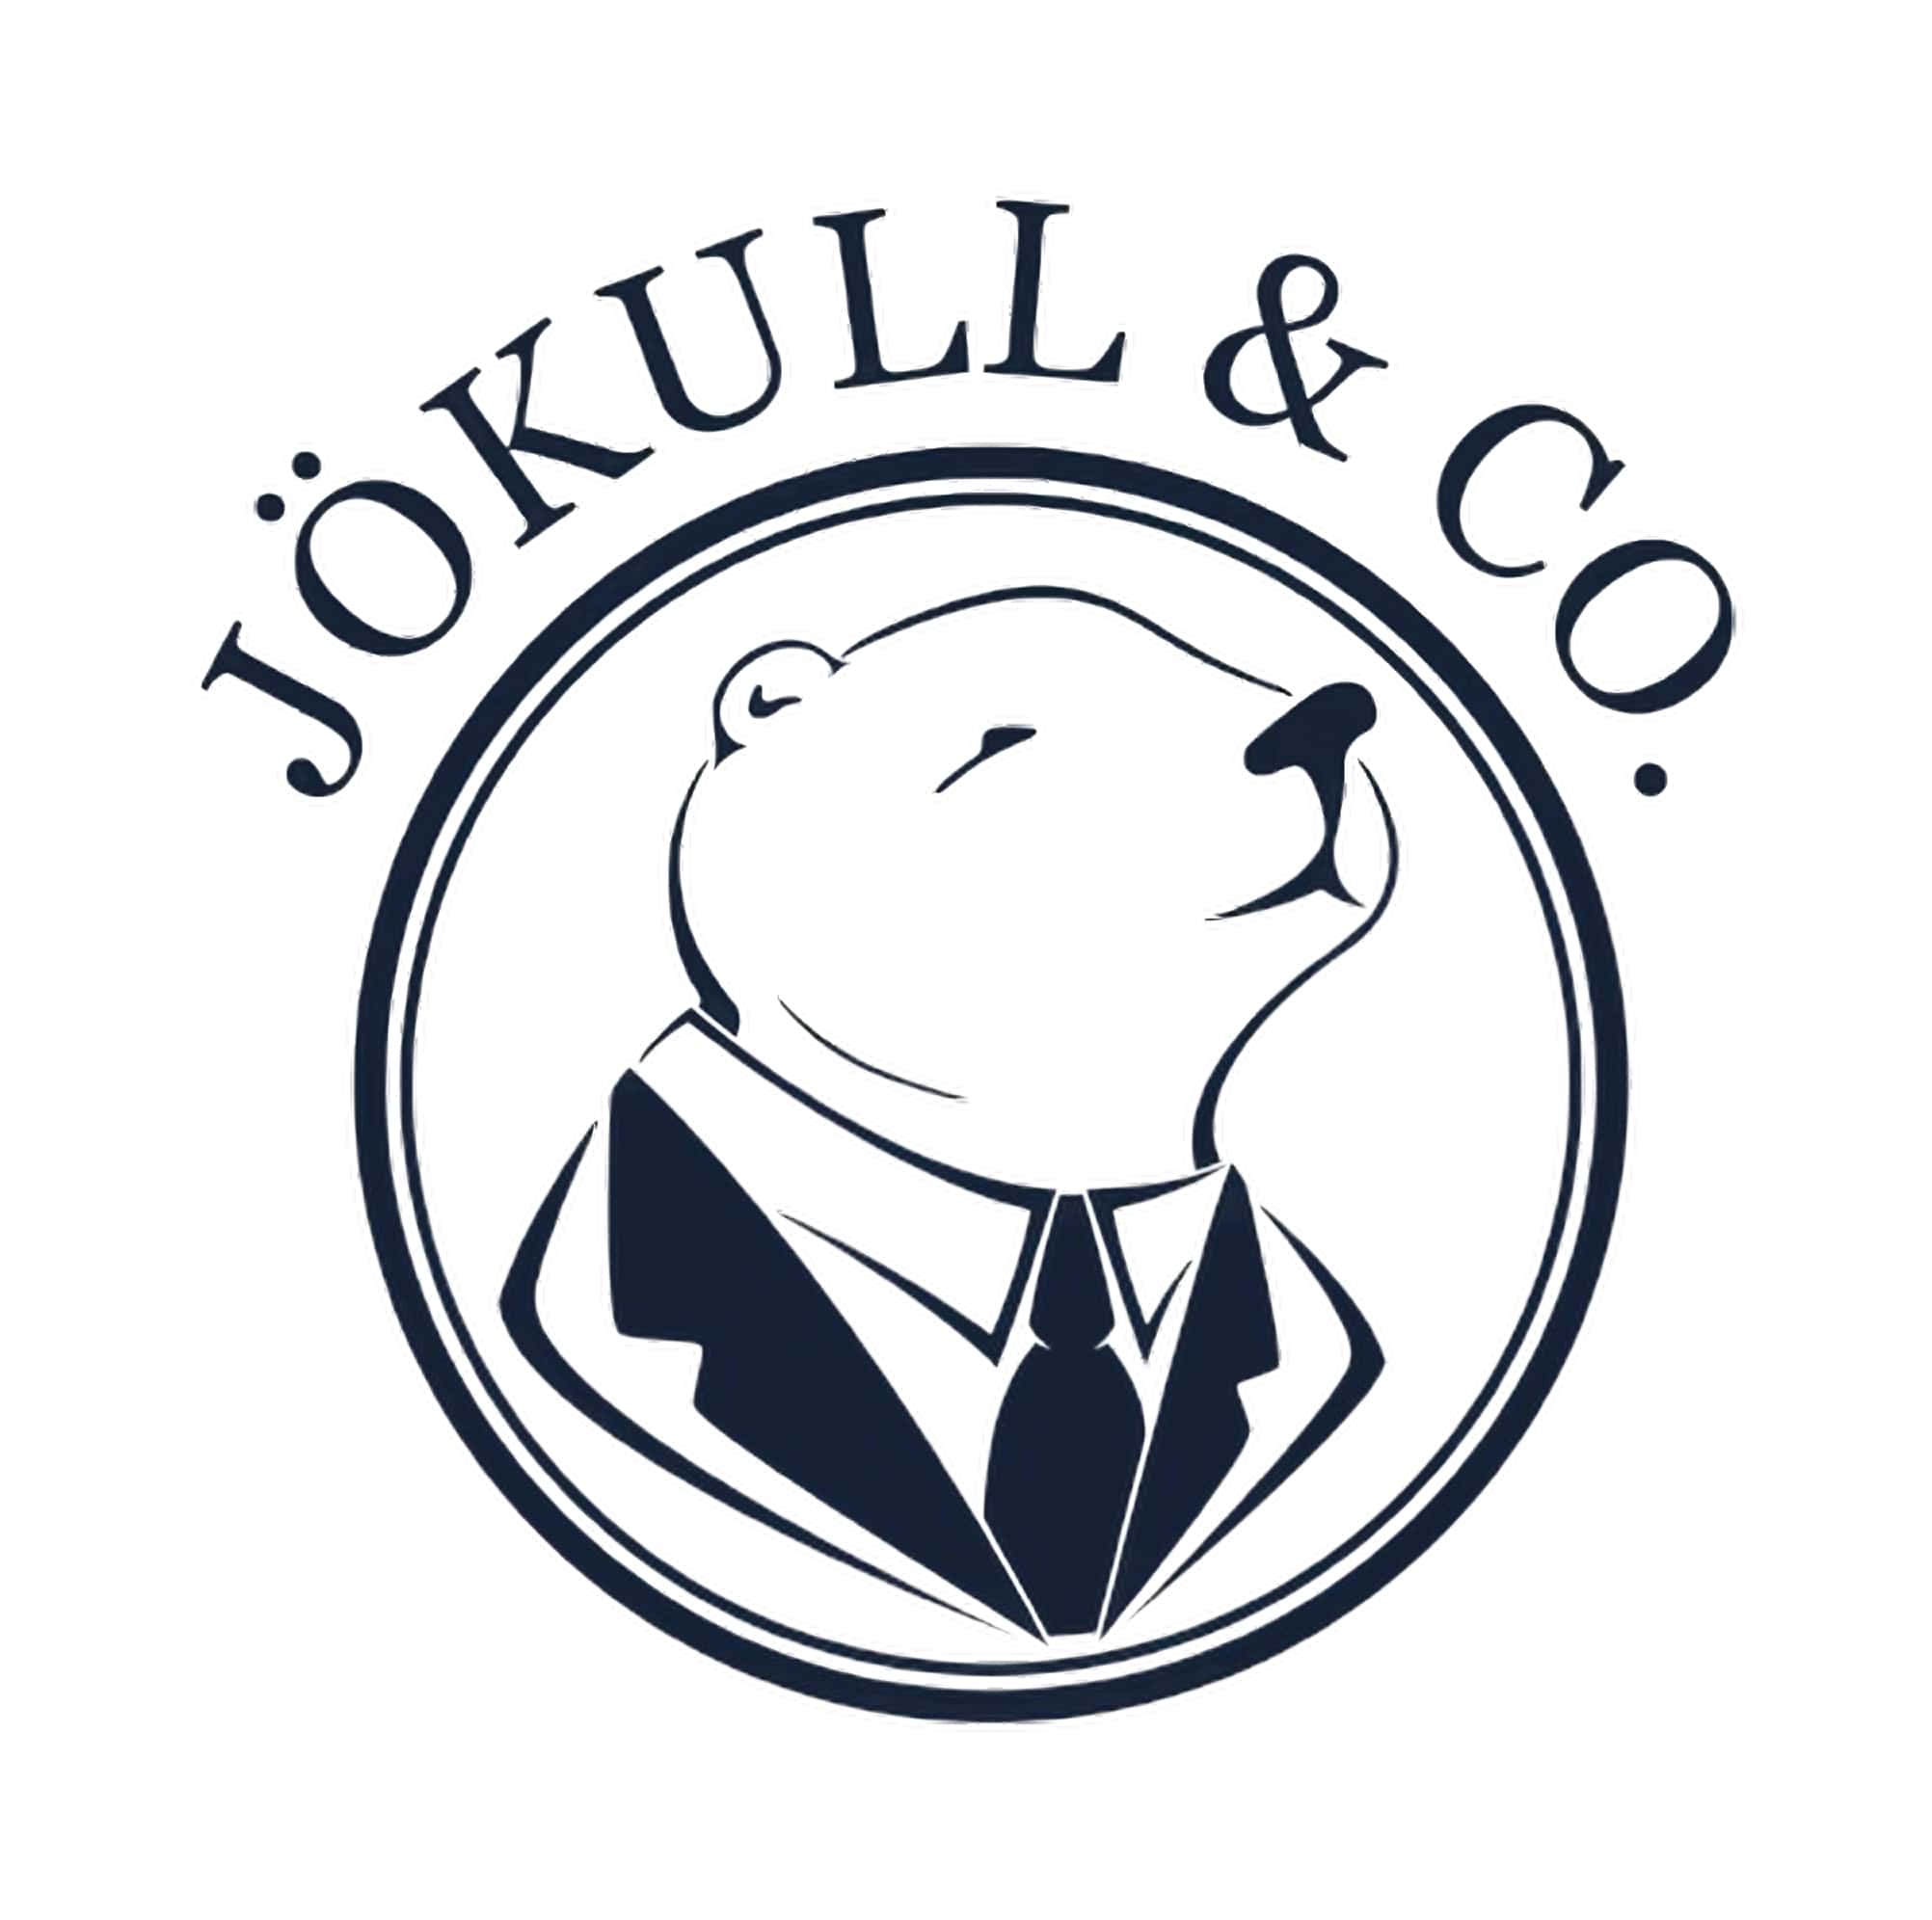 Jökull & Co.